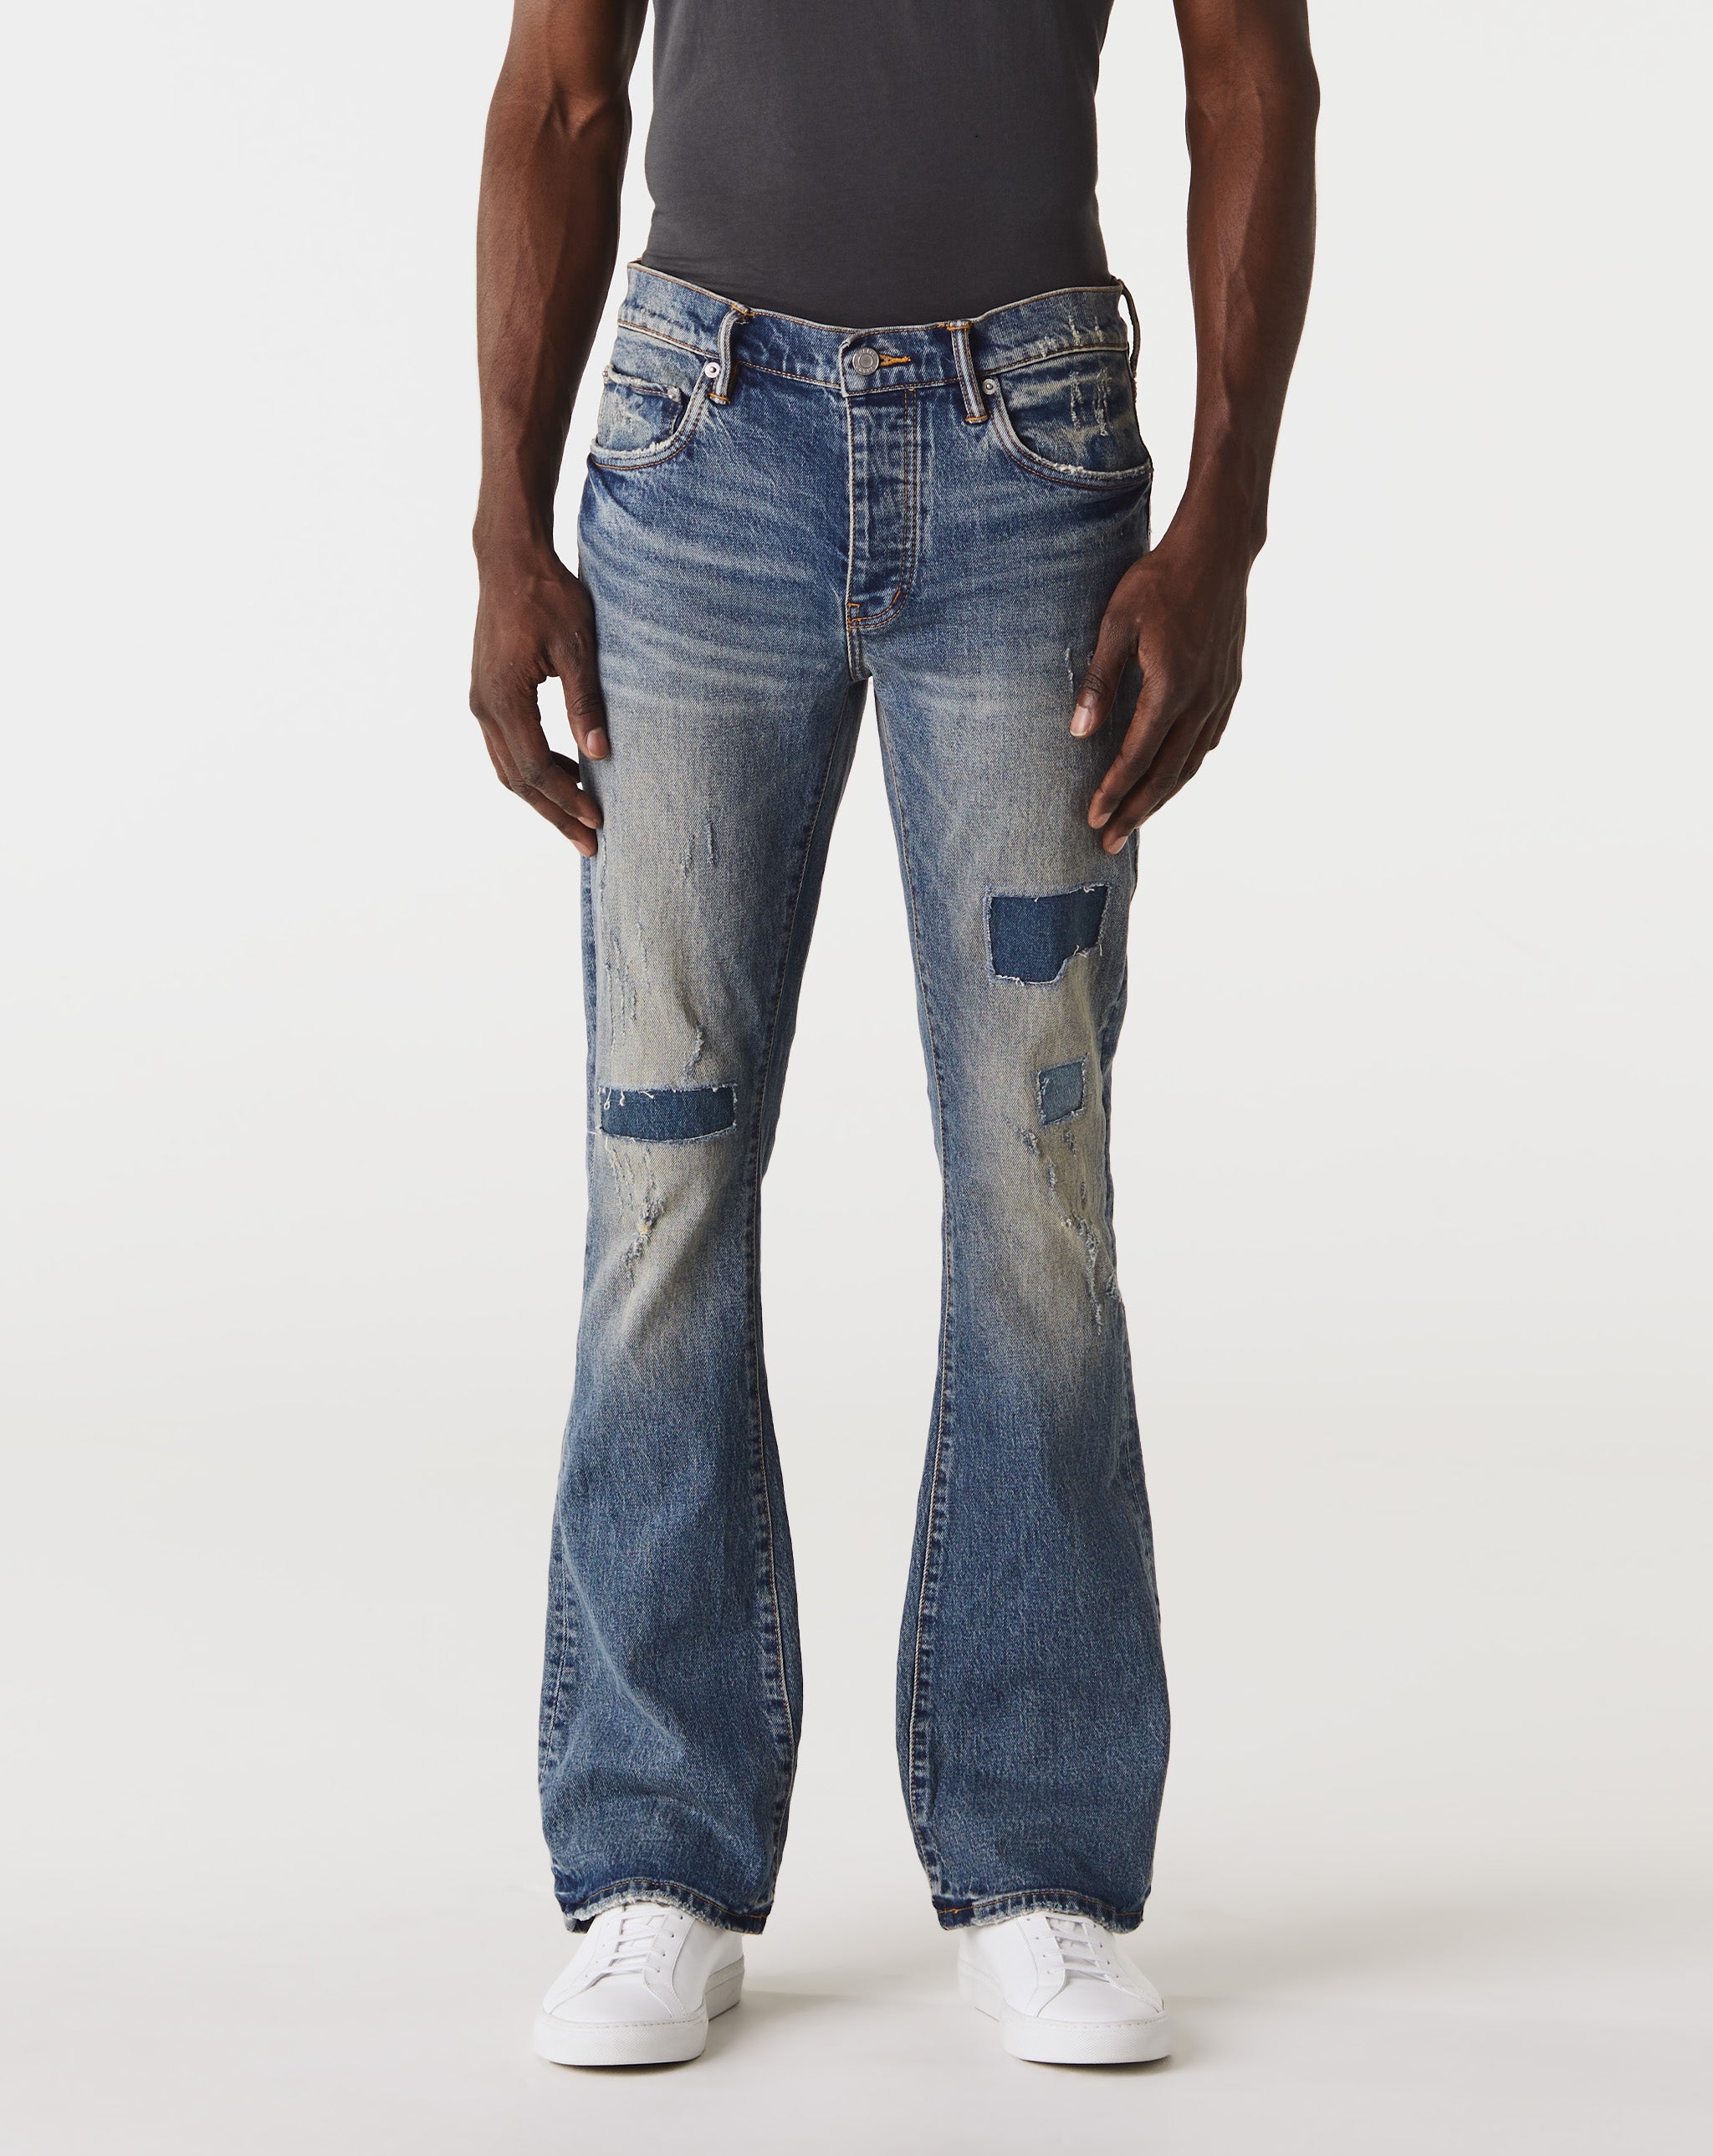 Purple shorts Flare Jeans  - Cheap Cerbe Jordan outlet